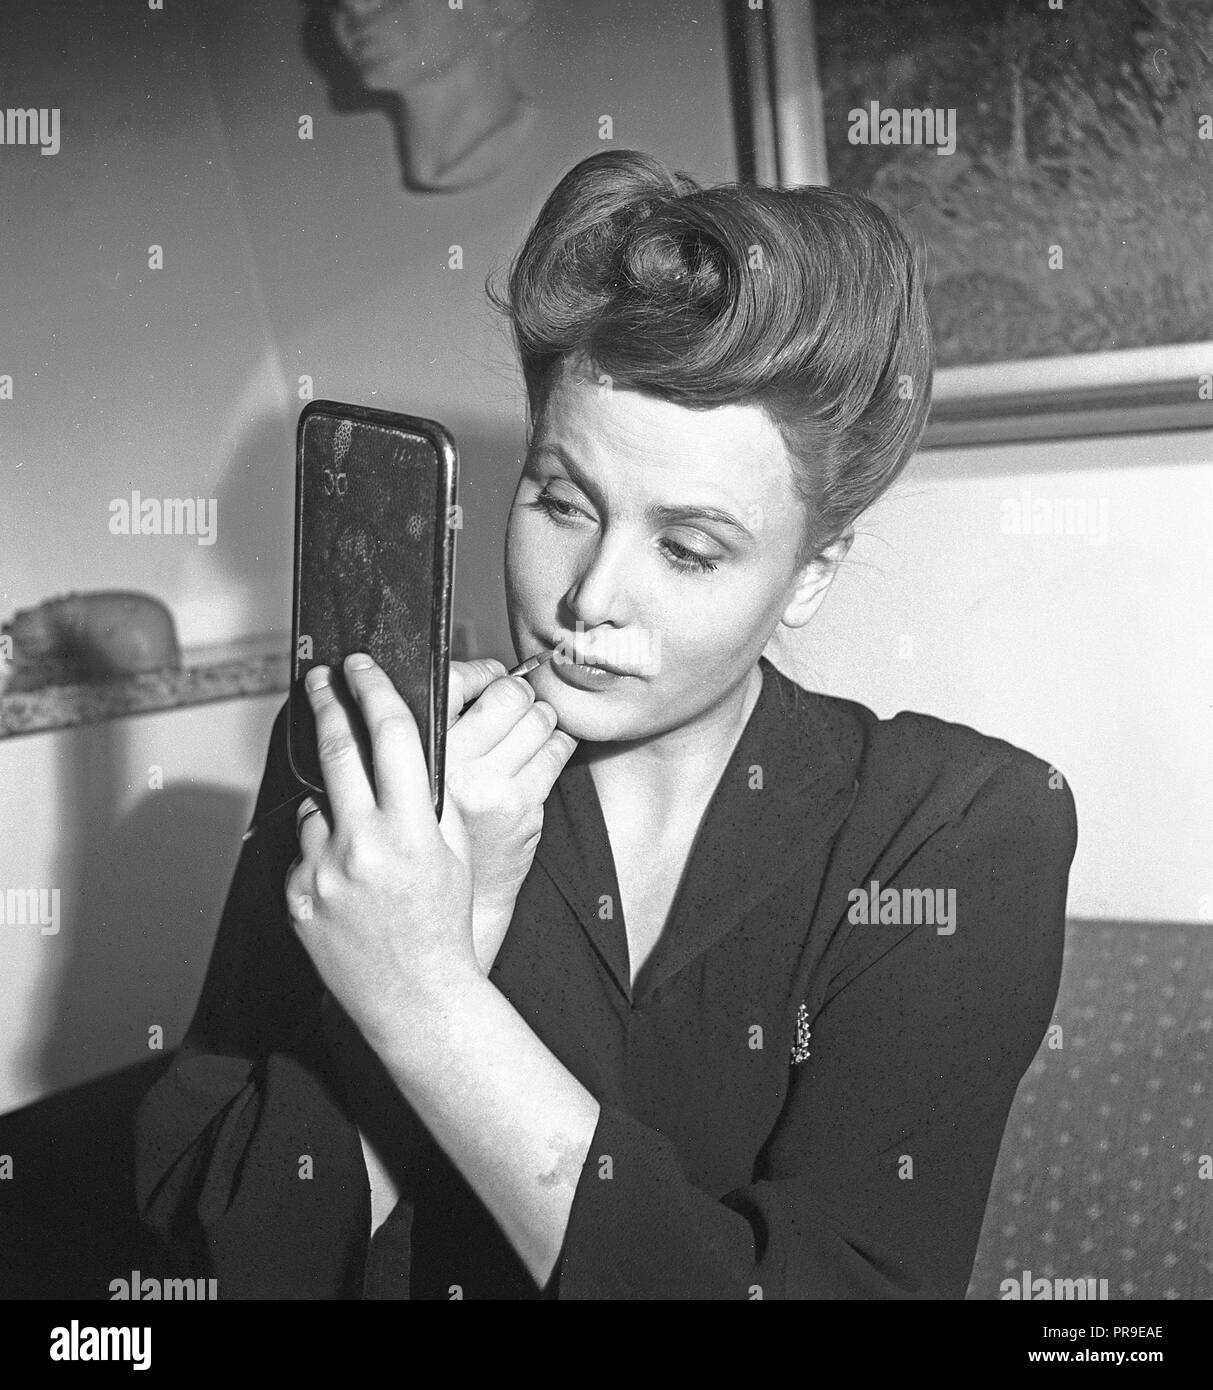 Schwedische Schauspielerin Birgit Tengroth, 1915-1983. Hier sehen Sie, wenn Sie auf ihrem Make-up. Die Frisur ist typisch 40er Jahre. Schweden 1944. Foto Kristoffersson ref G 85-3 Stockfoto